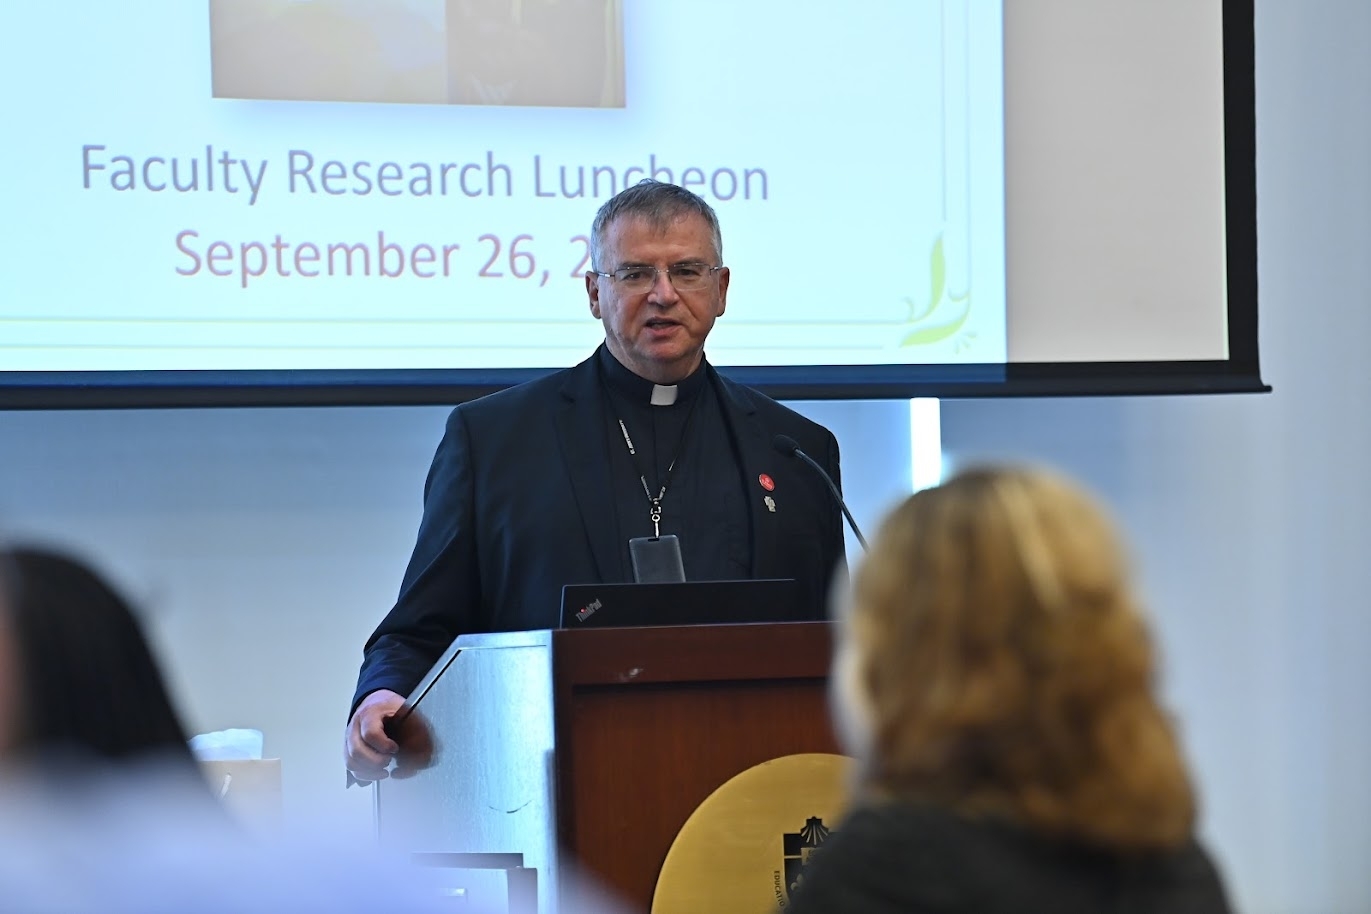 Fr. Griffin Speaking at Podium